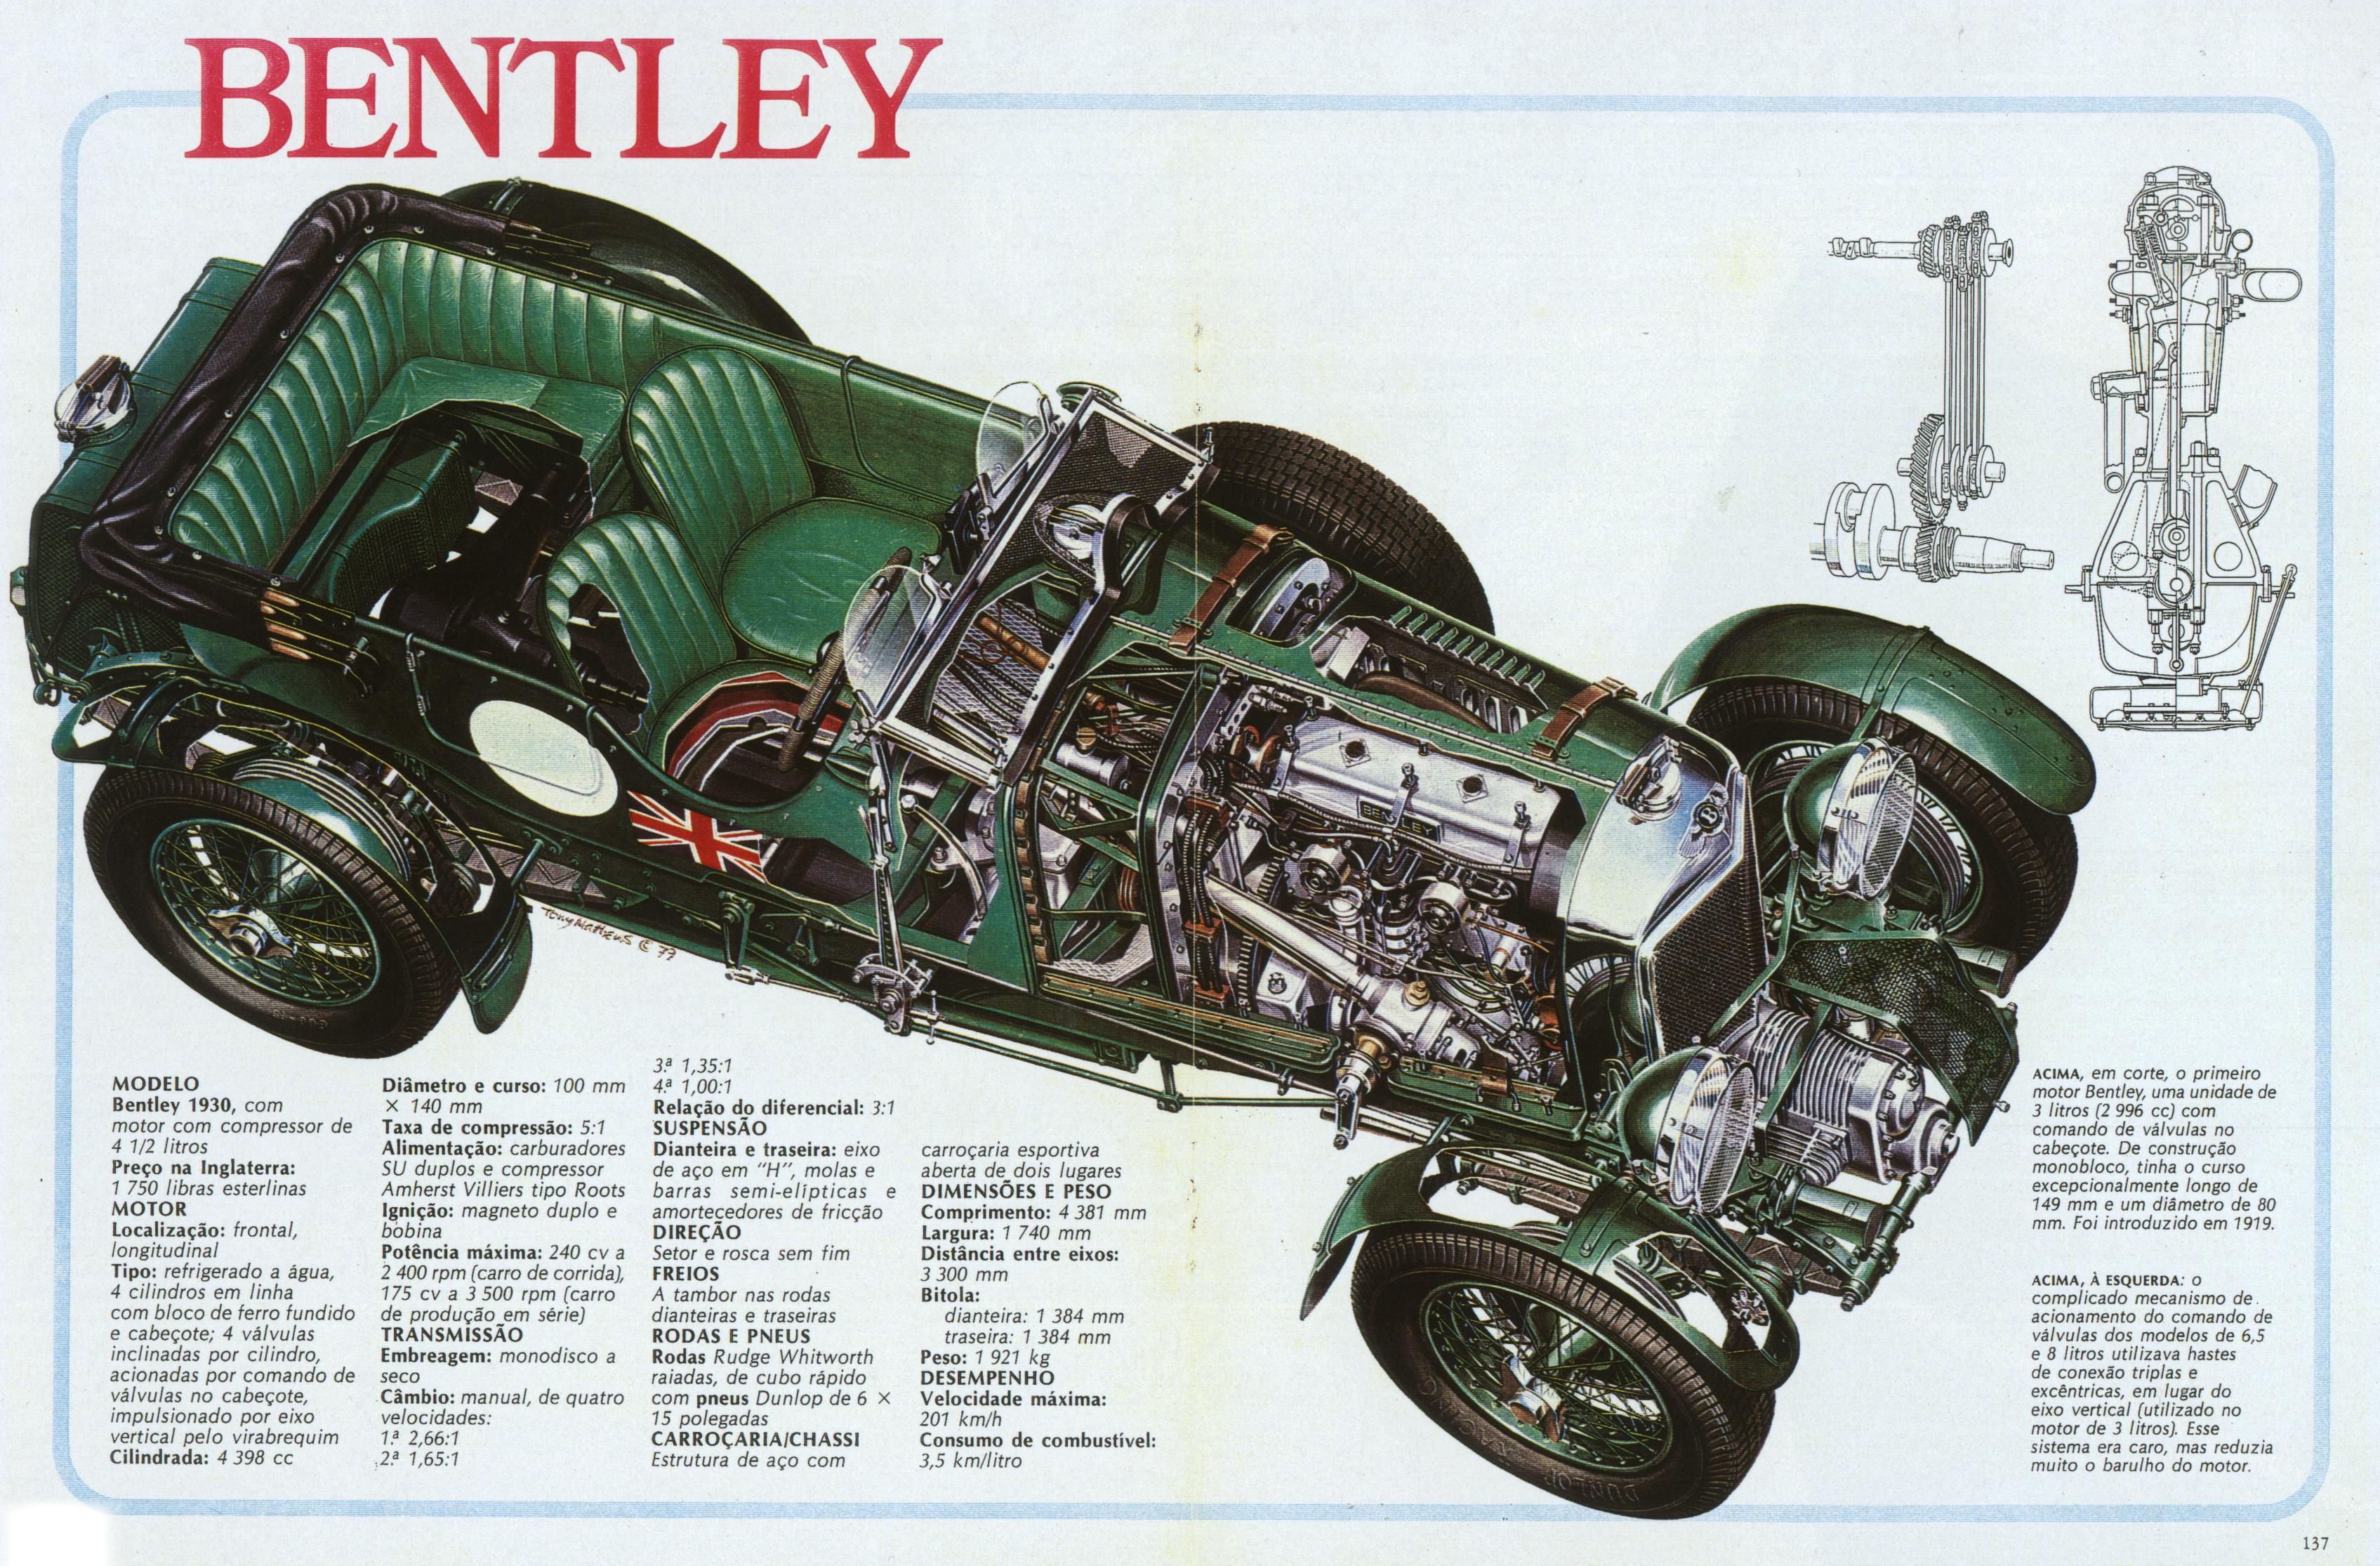 Bentley 3 Litre Wallpapers